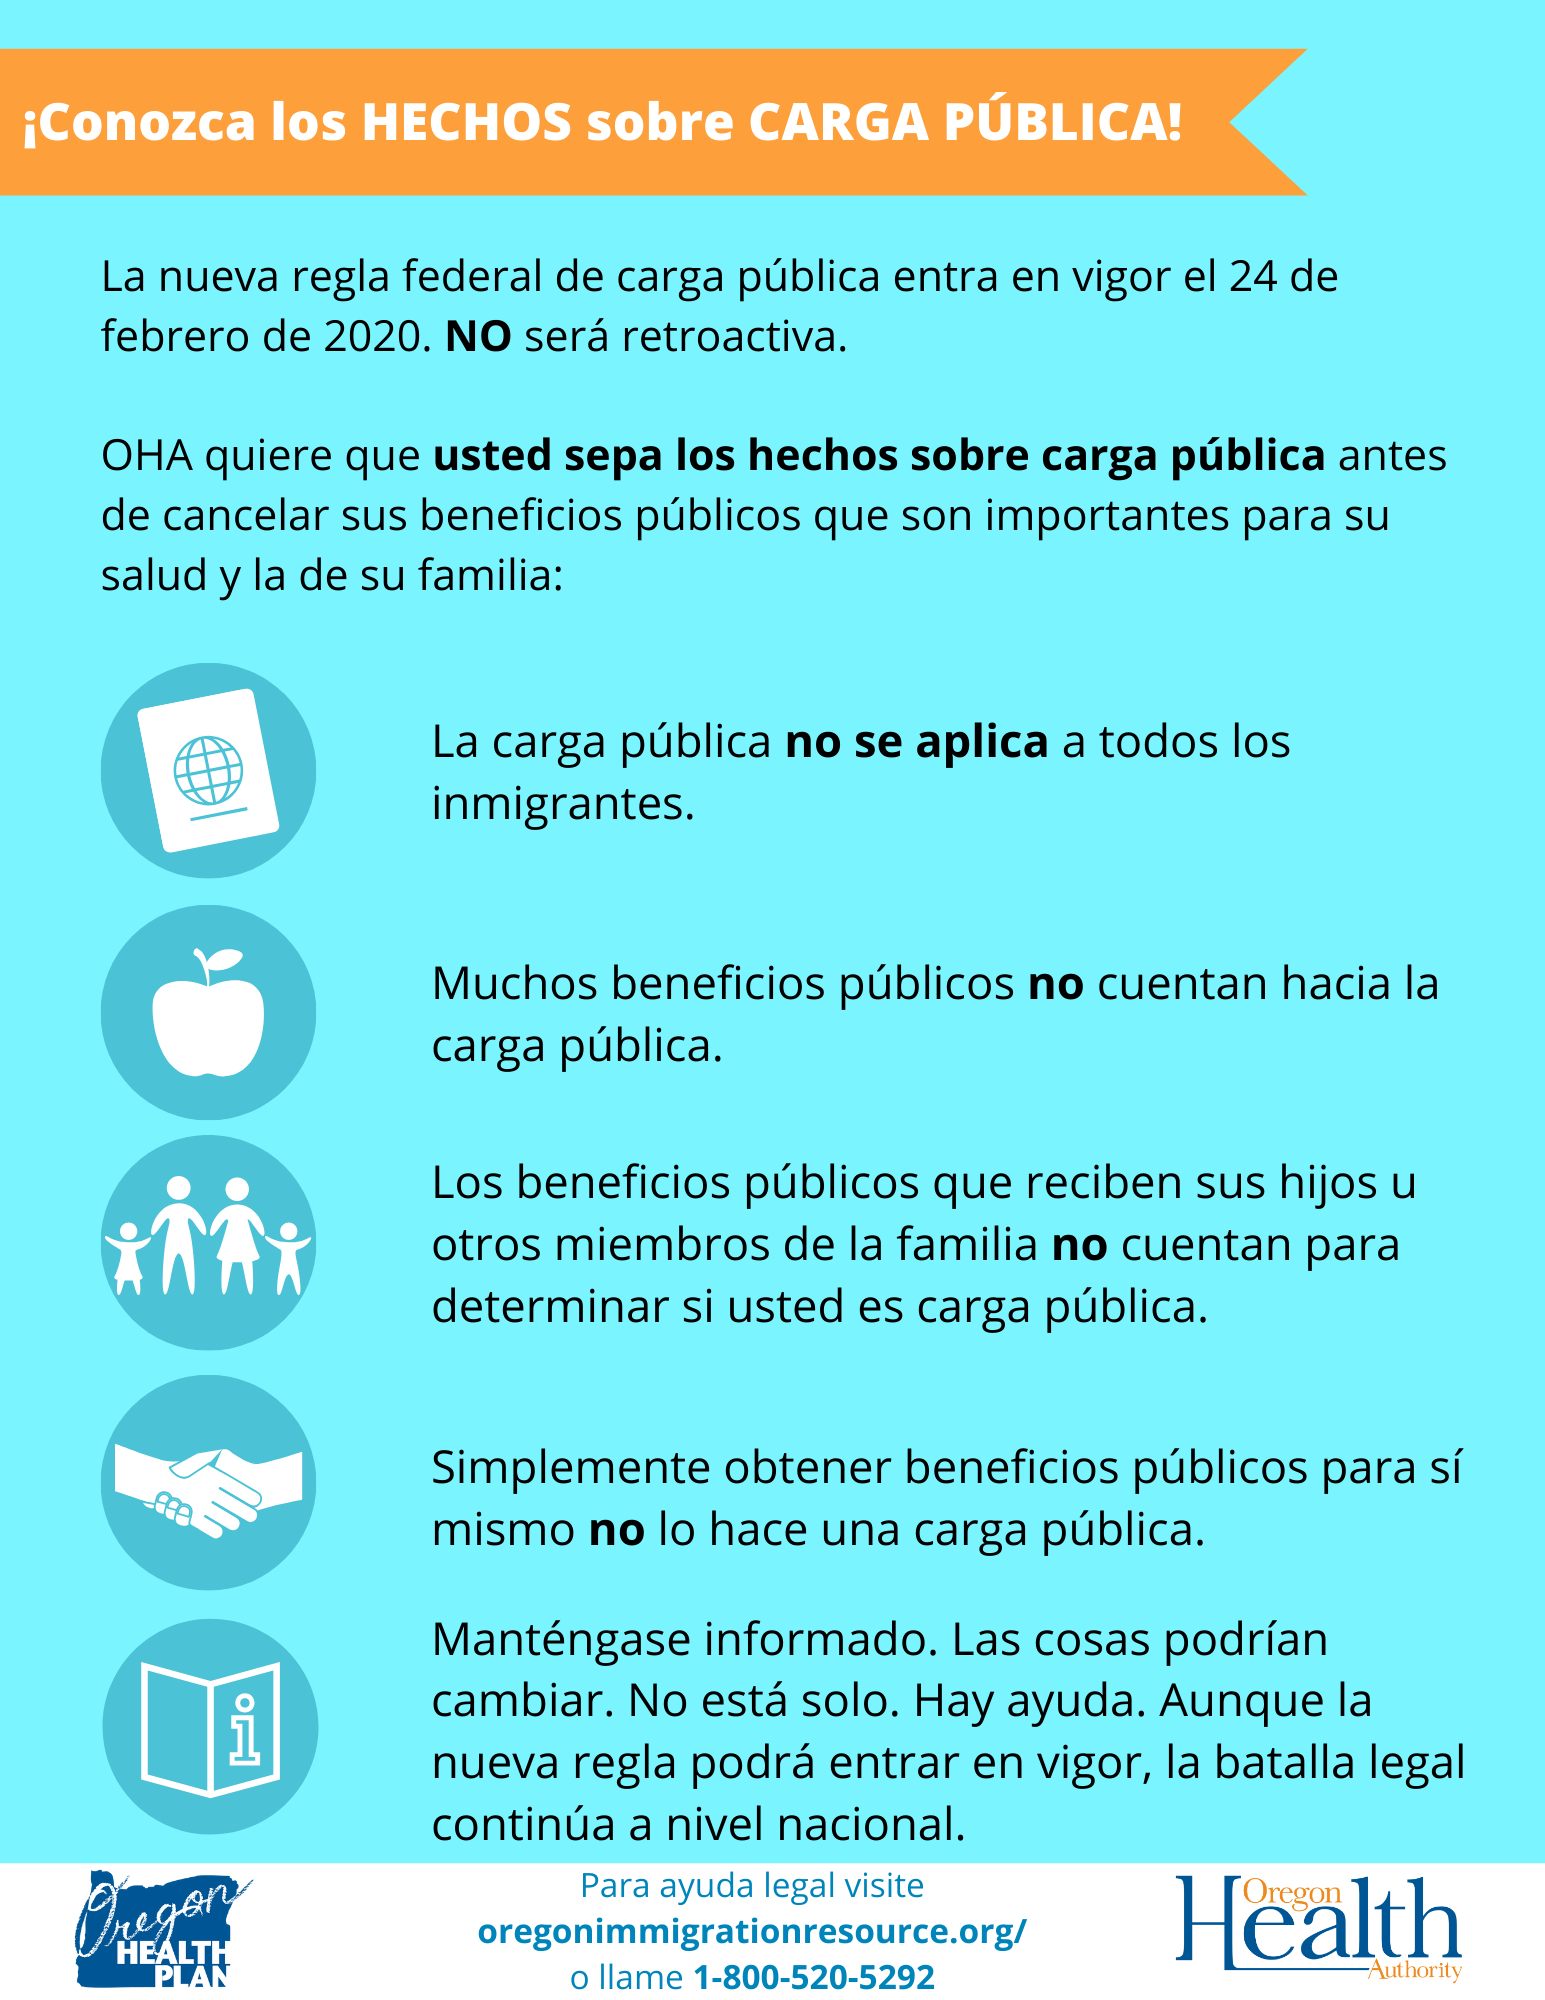 Social media graphic in Spanish: Conozca los hechos sobre carga publica